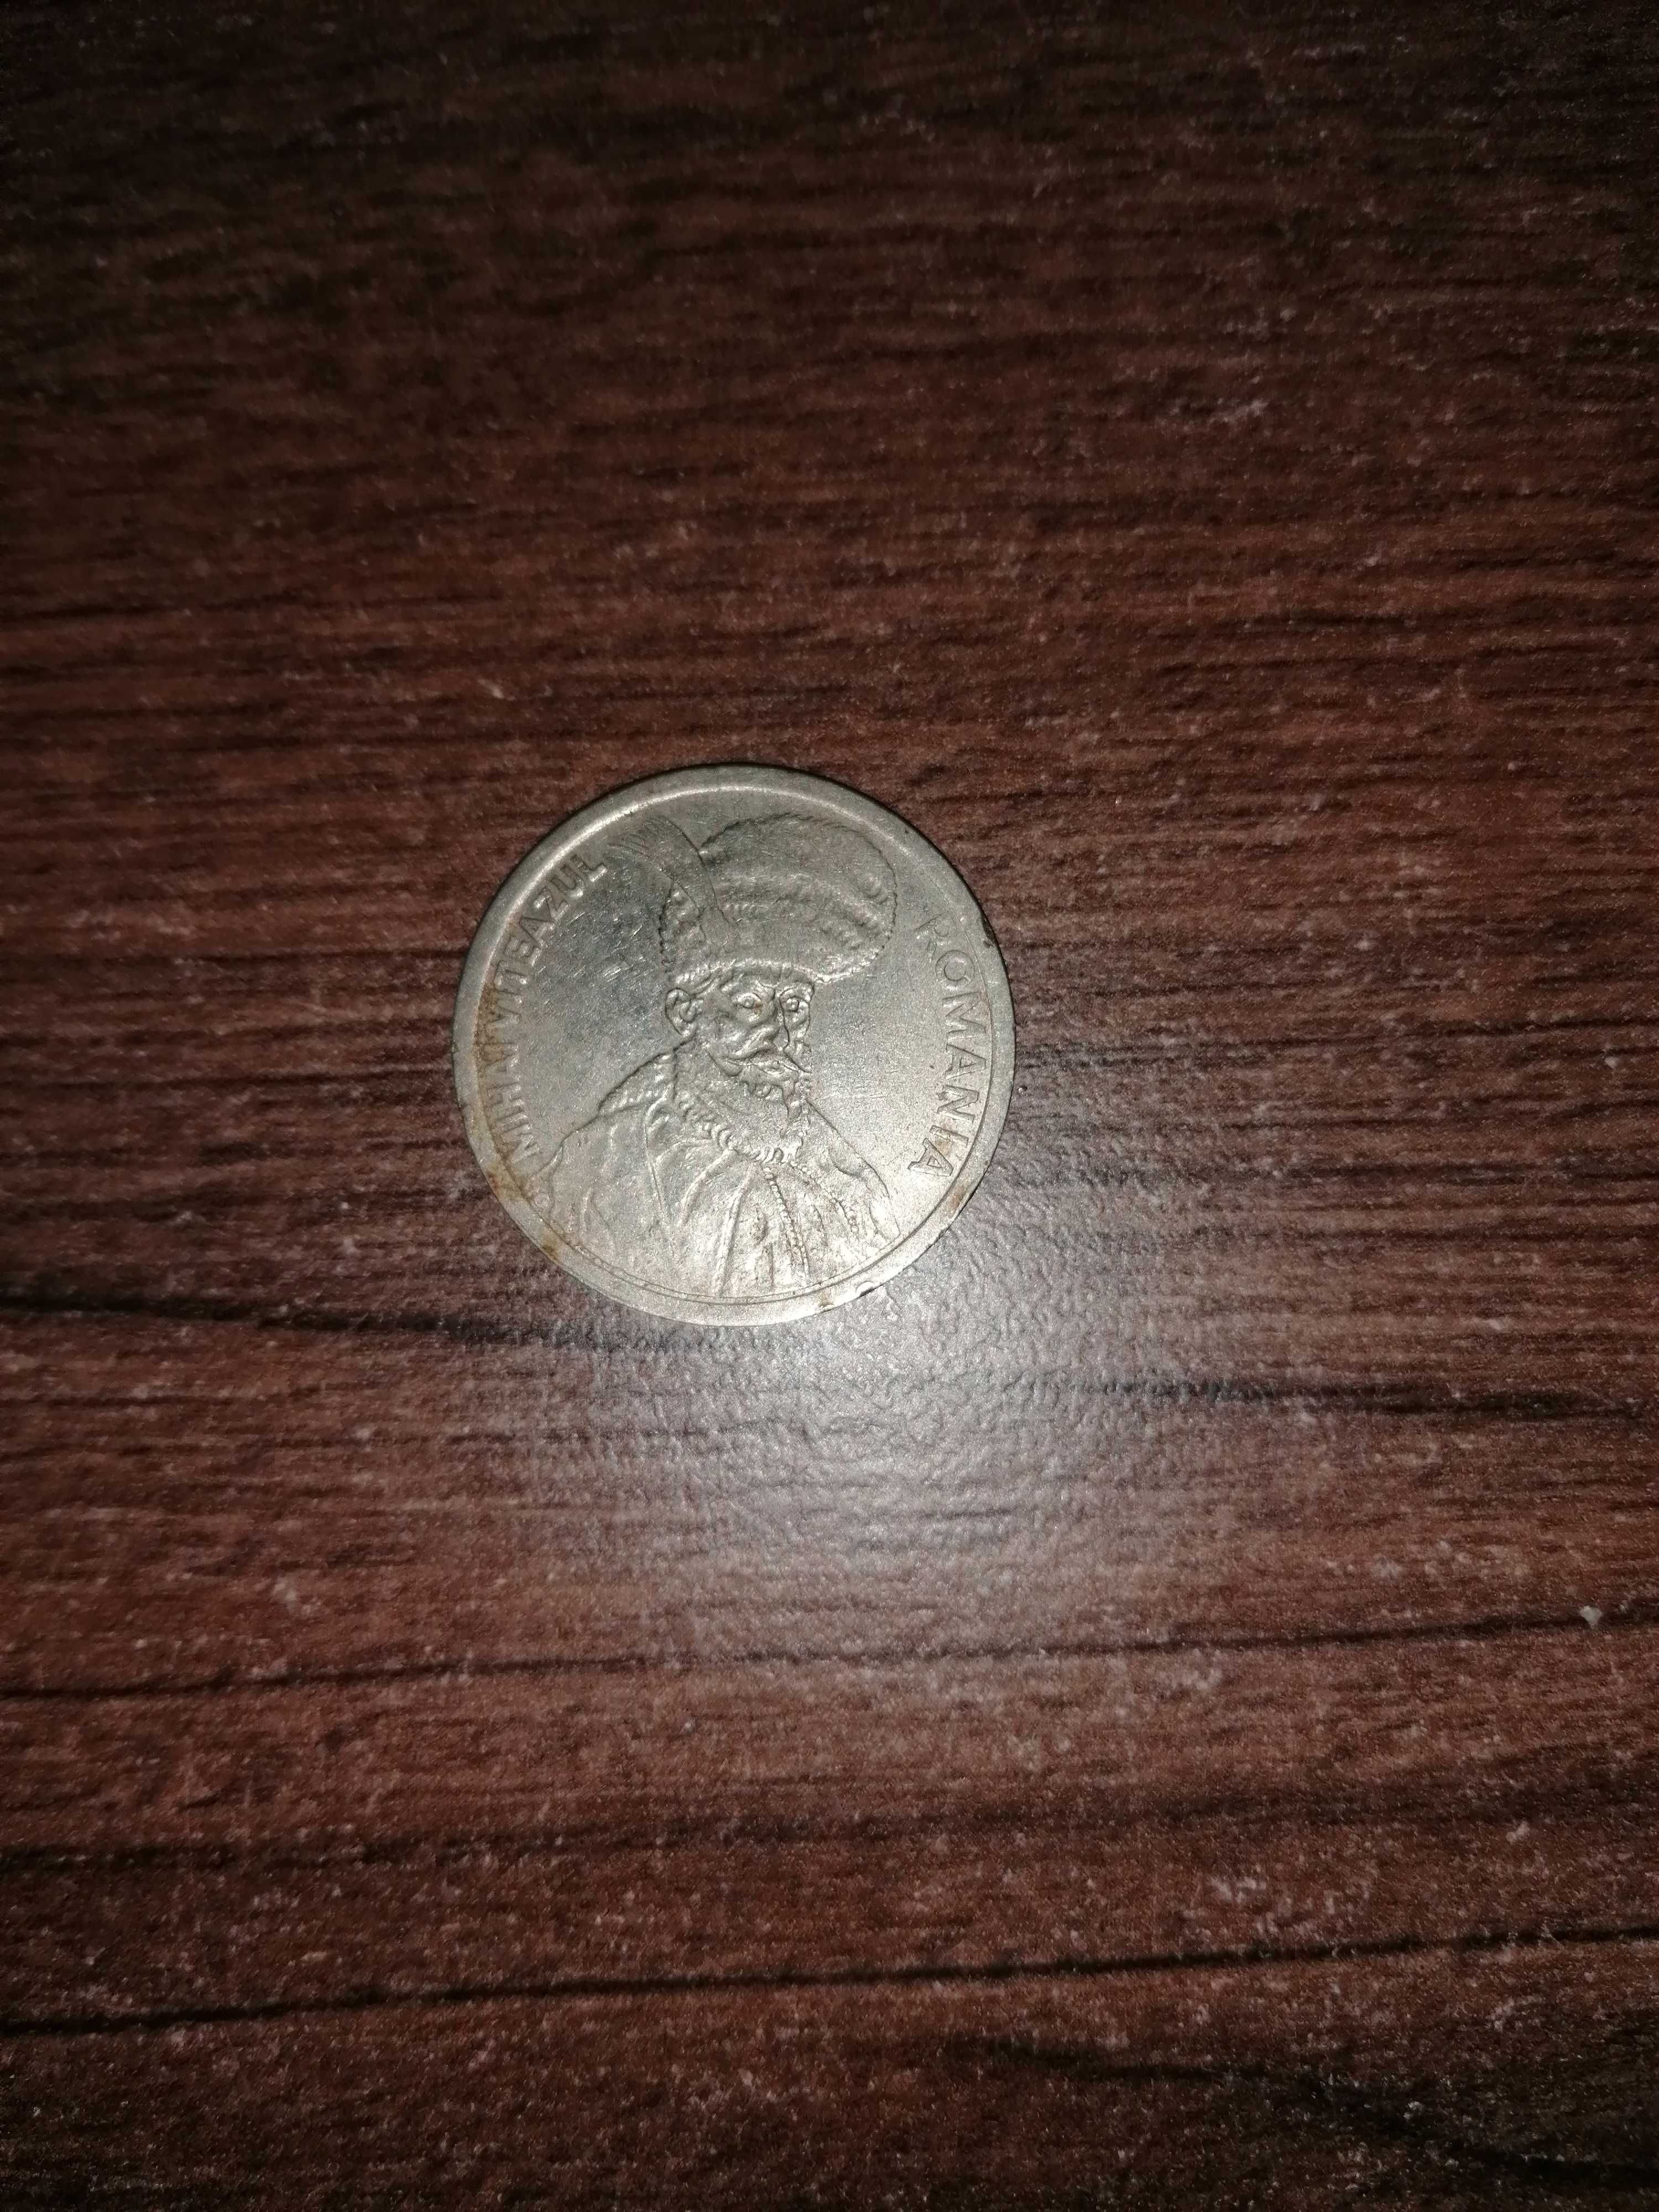 Moneda 100 lei Mihai Viteazu